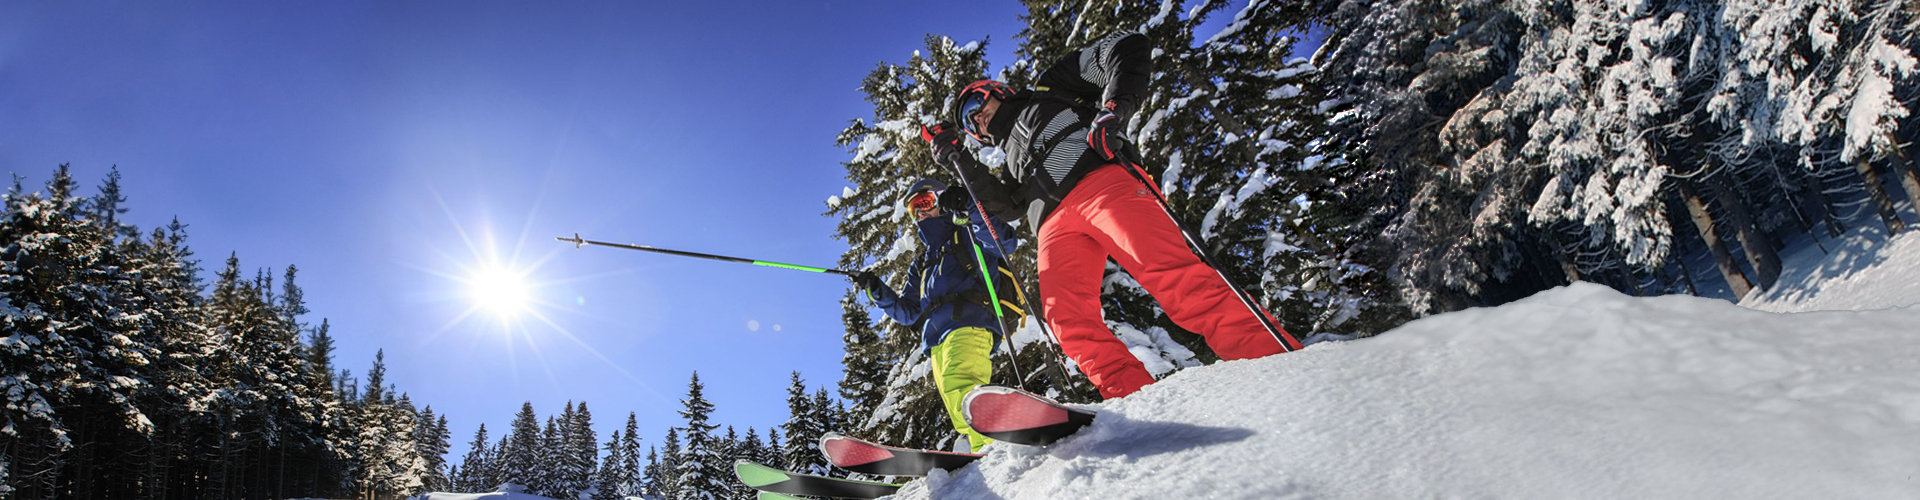 Lyžařská škola pro dospělé - výuka lyžování Krkonoše